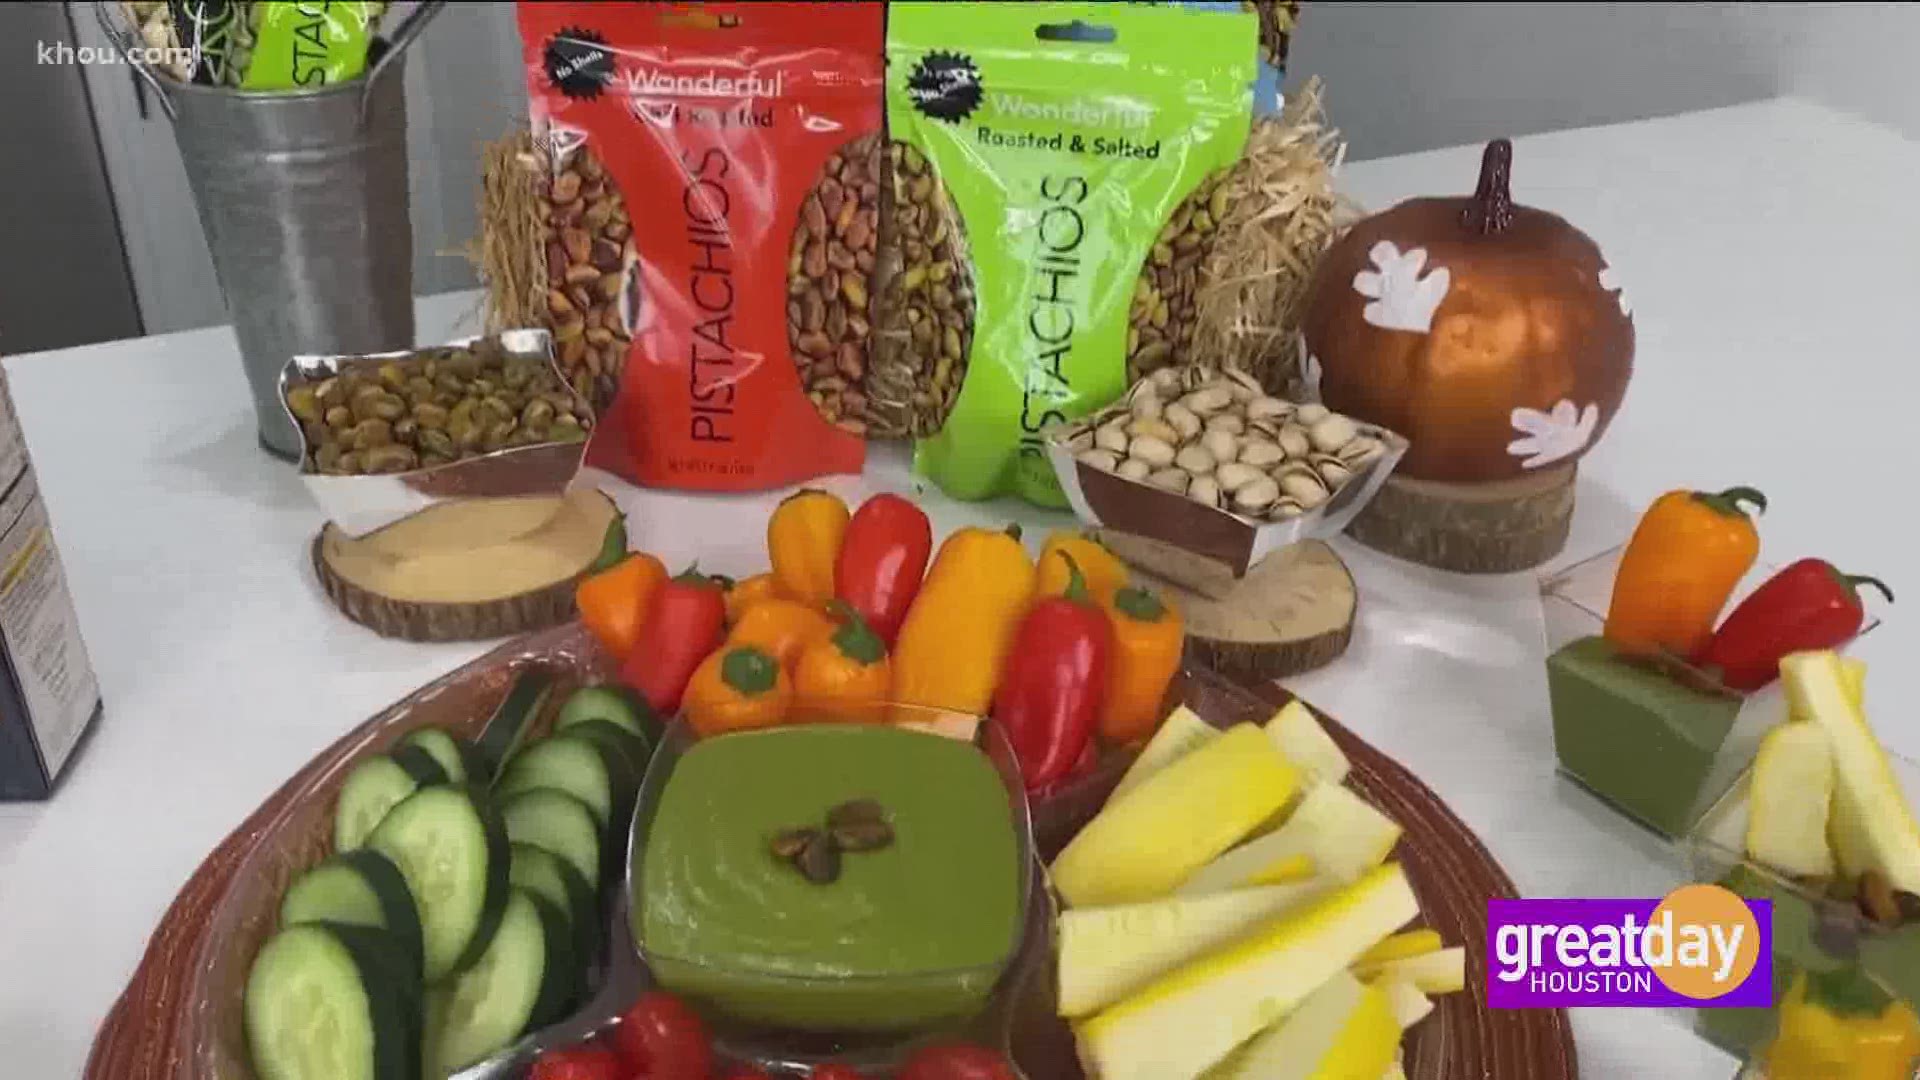 Registered Dietitian Amy Goodson shares her favorite picks for grab-n-go snacks